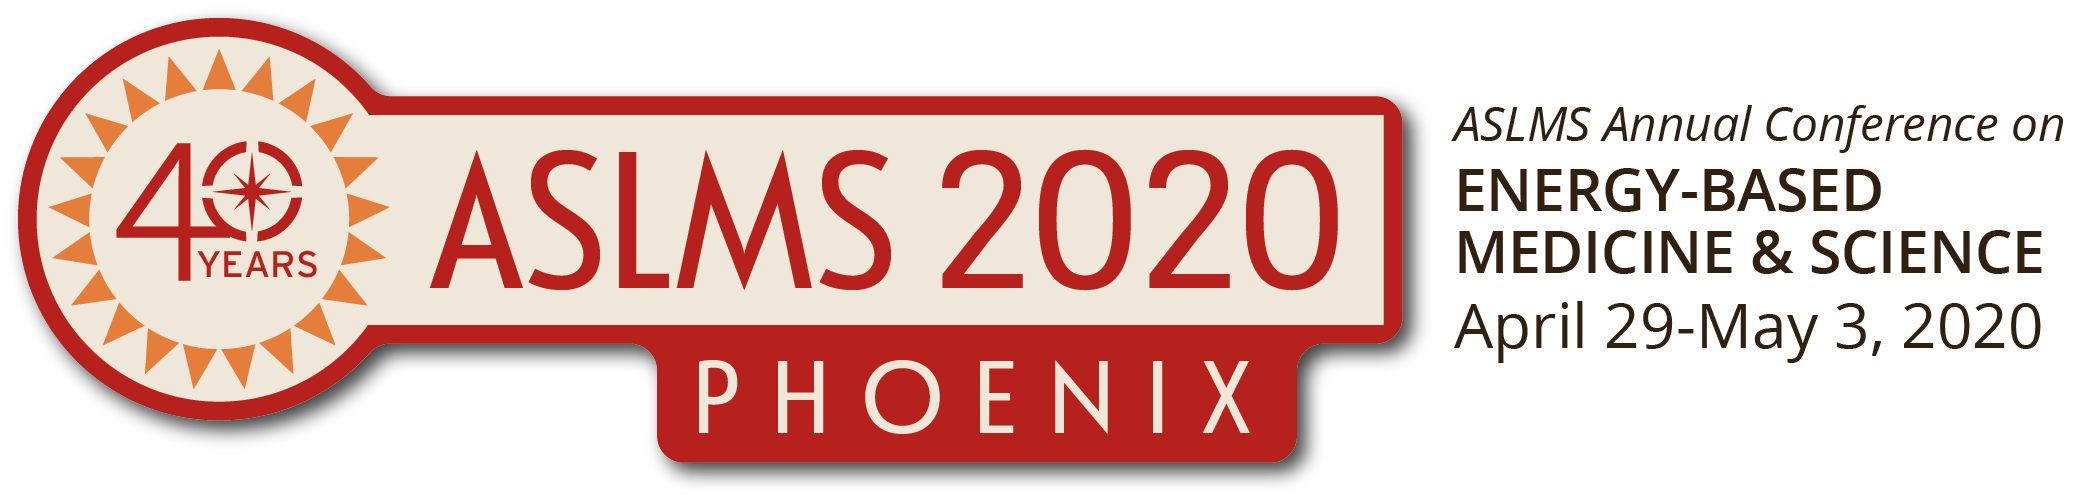 aslms 2020 logo